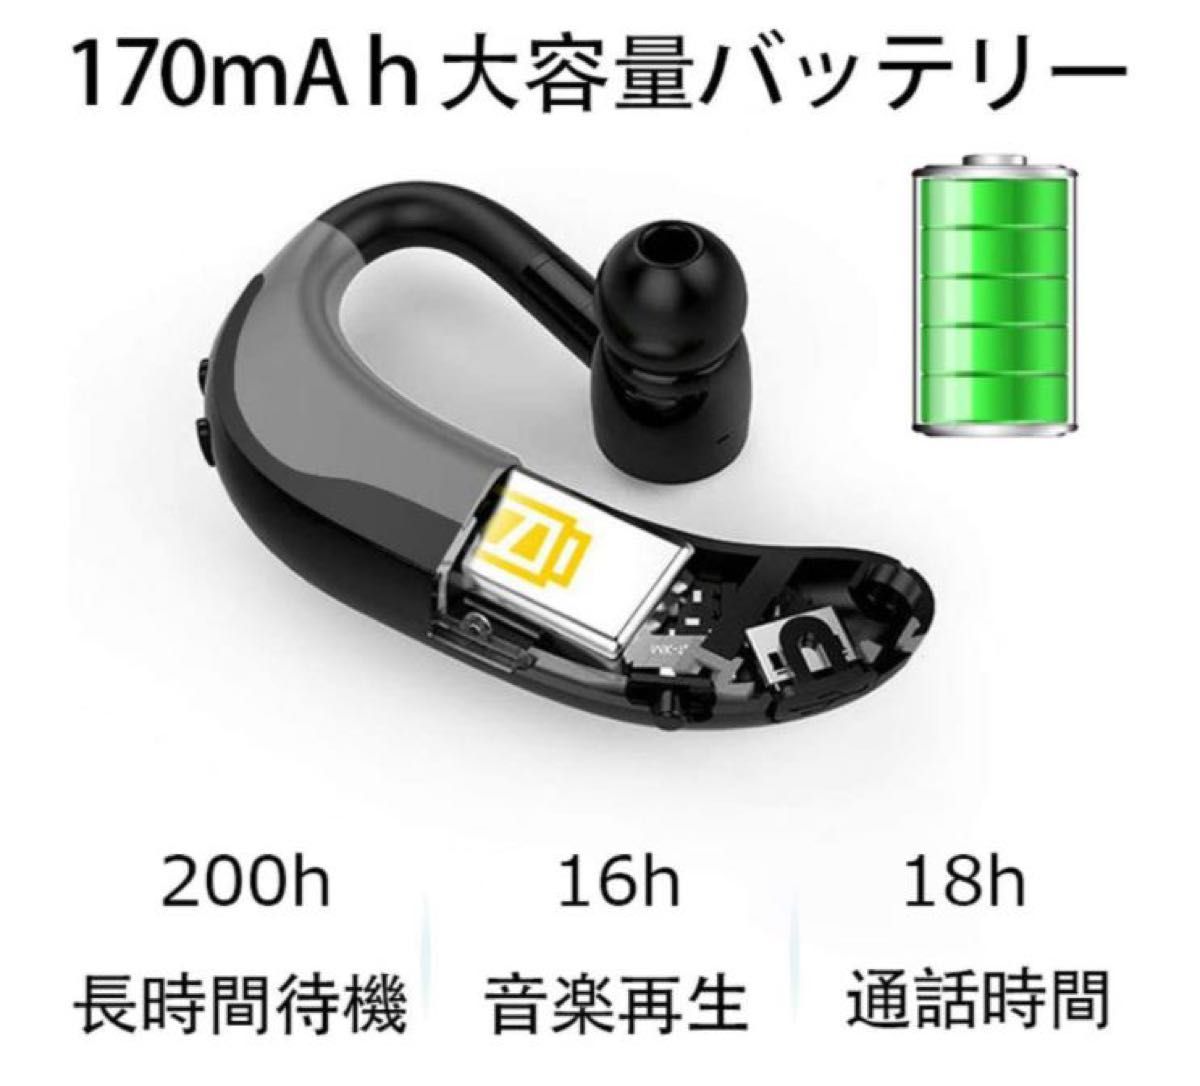 ワイヤレスイヤホン 耳掛け 片耳 ハンズフリー マイク付 通話 大容量バッテリー Bluetoothヘッドセット iPhone 